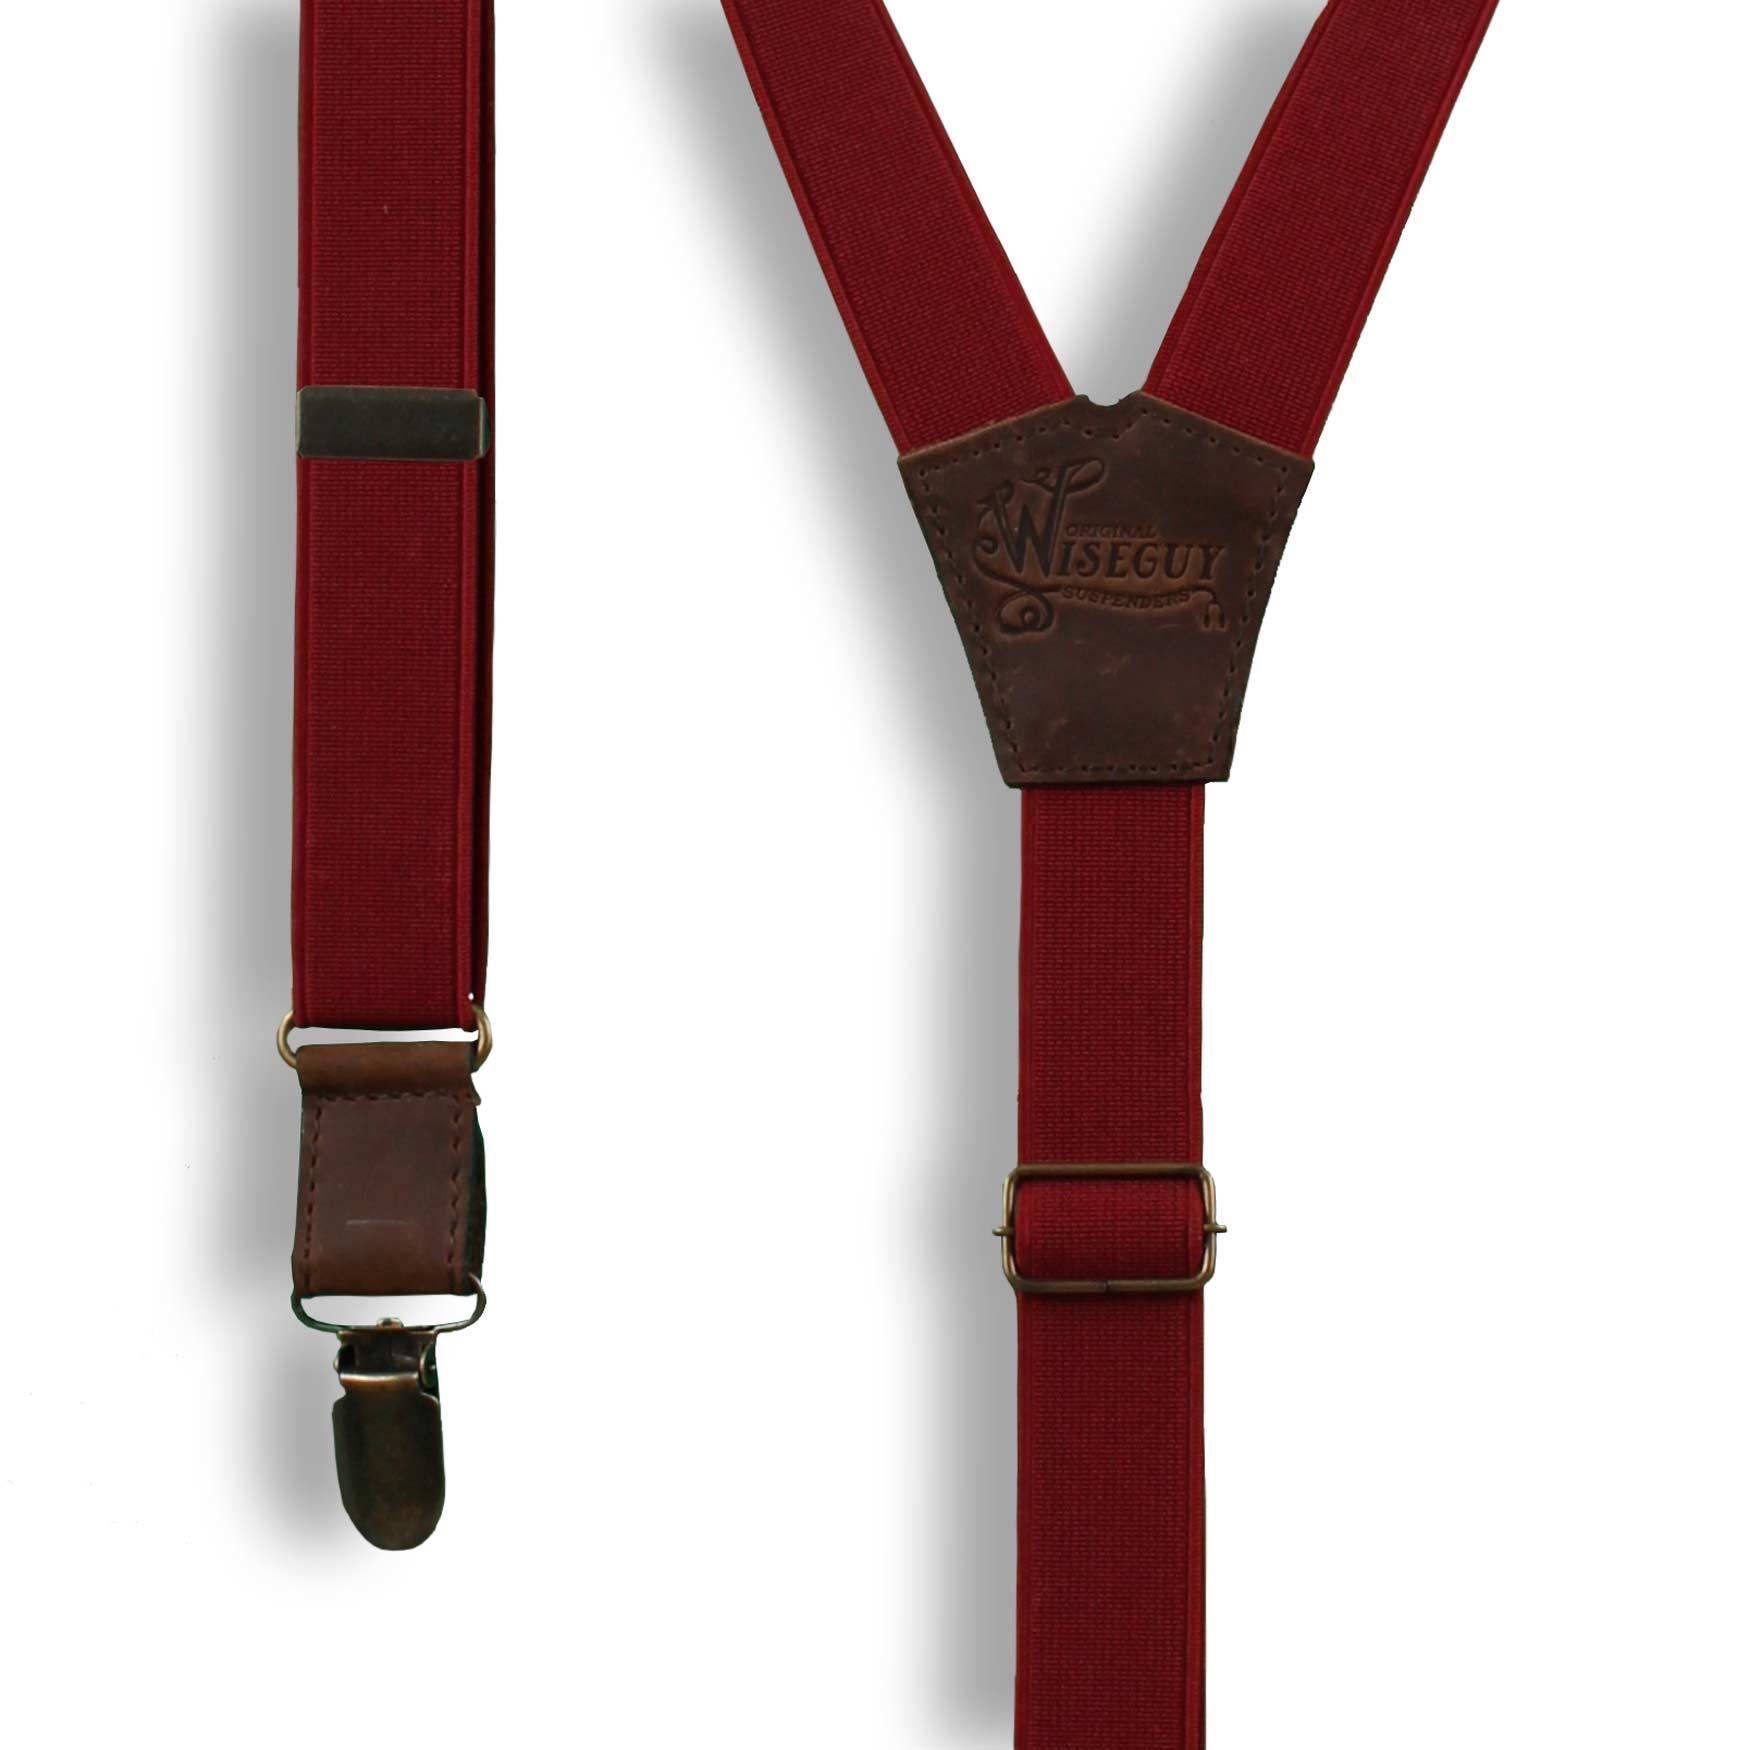 Cordovan Burgundy Formal men's Suspenders on Brown thin 1 inch wide - Wiseguy Suspenders